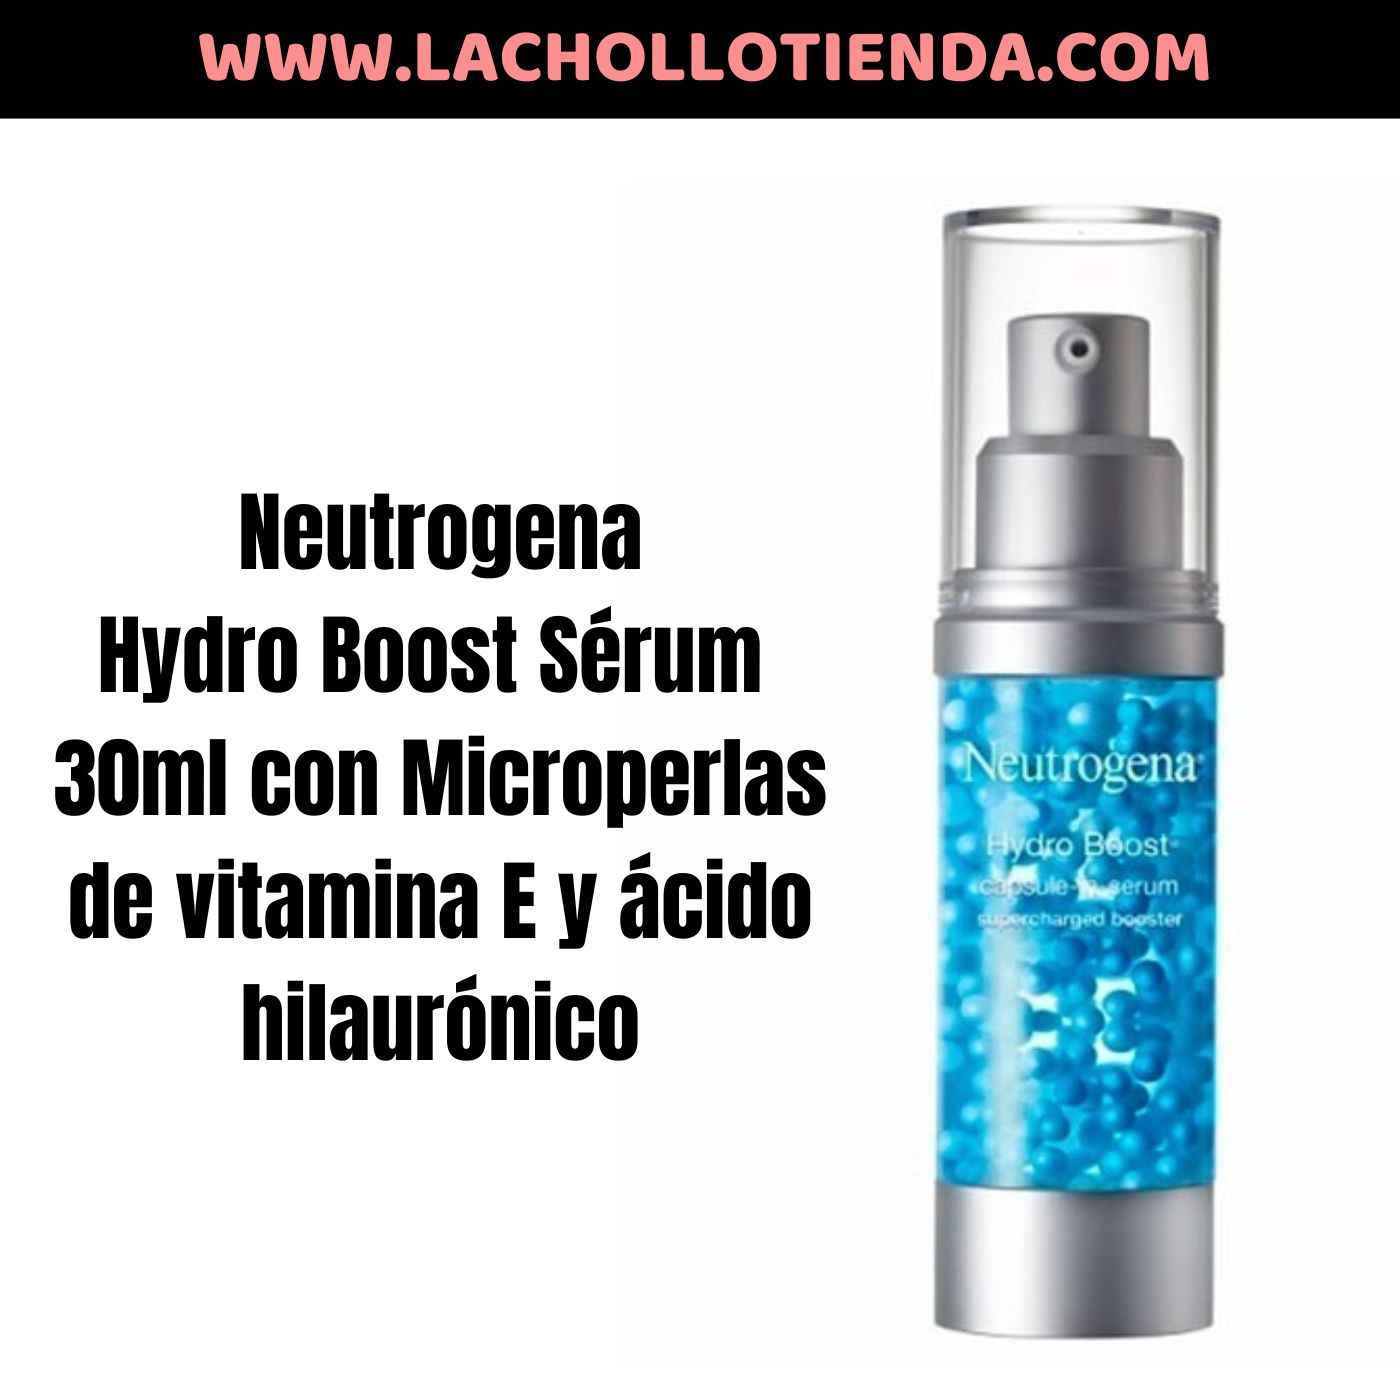 Neutrogena Hydro Boost Sérum 30ml con Microperlas de vitamina E y ácido hilaurónico